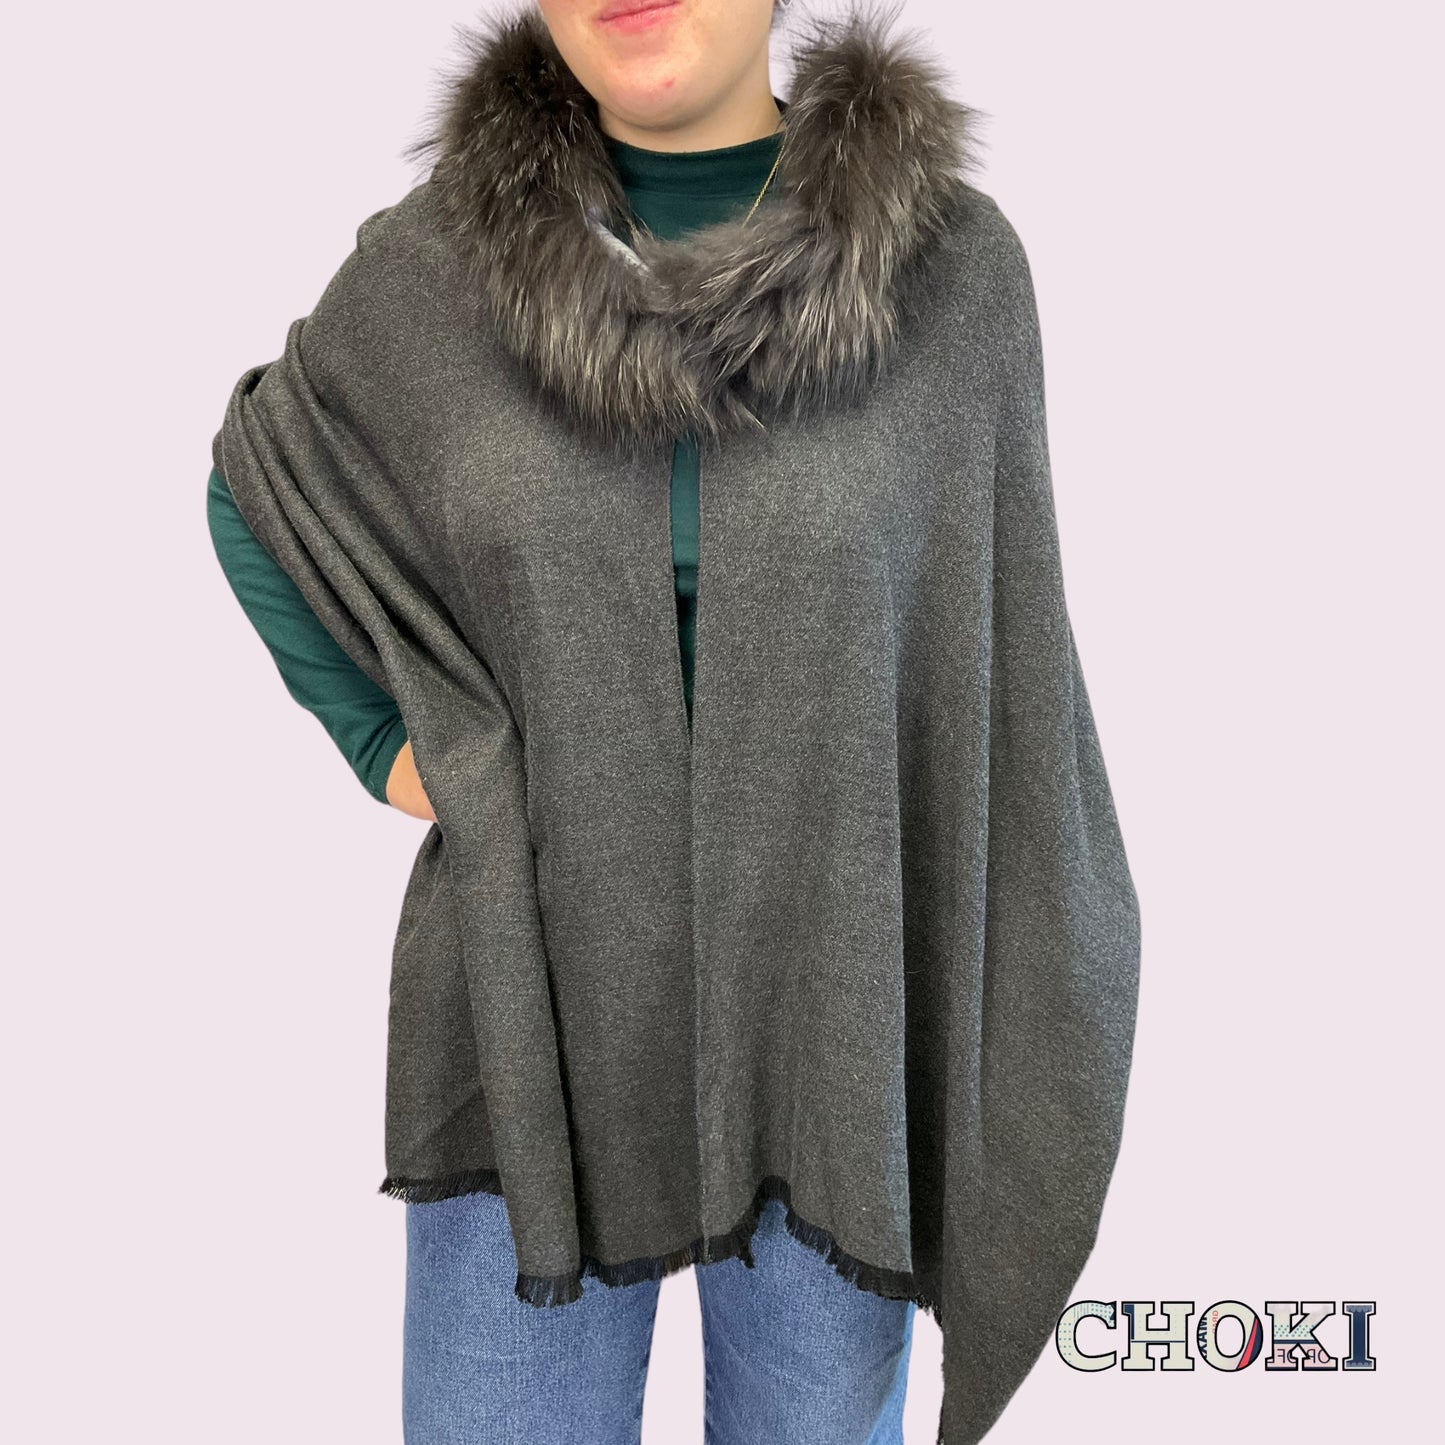 Cachemere - Wool Fur scarves